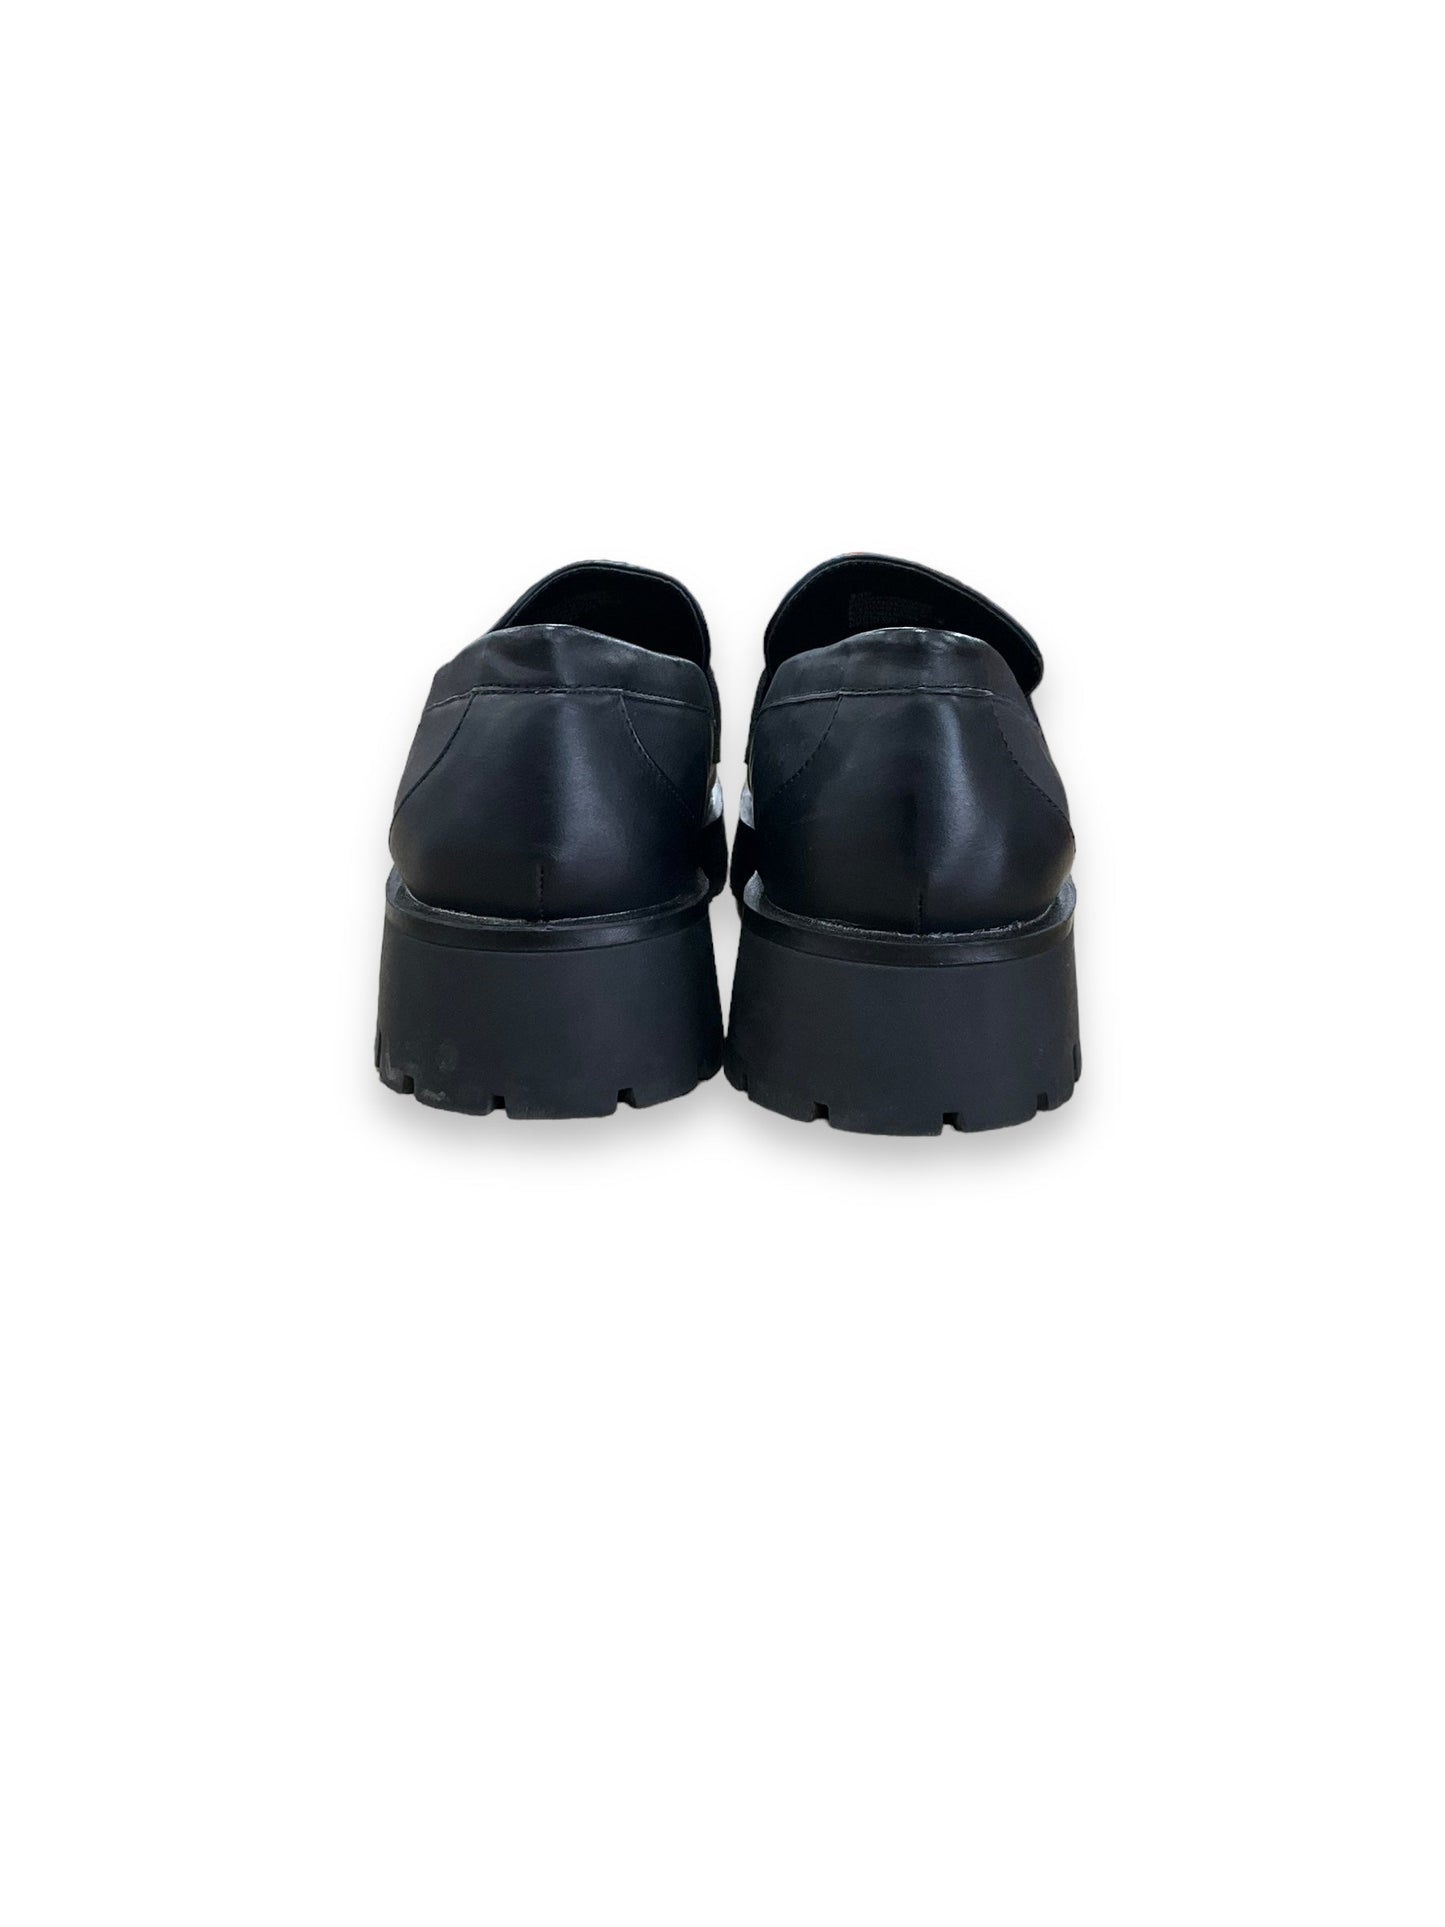 Shoes Flats By Esprit  Size: 9.5